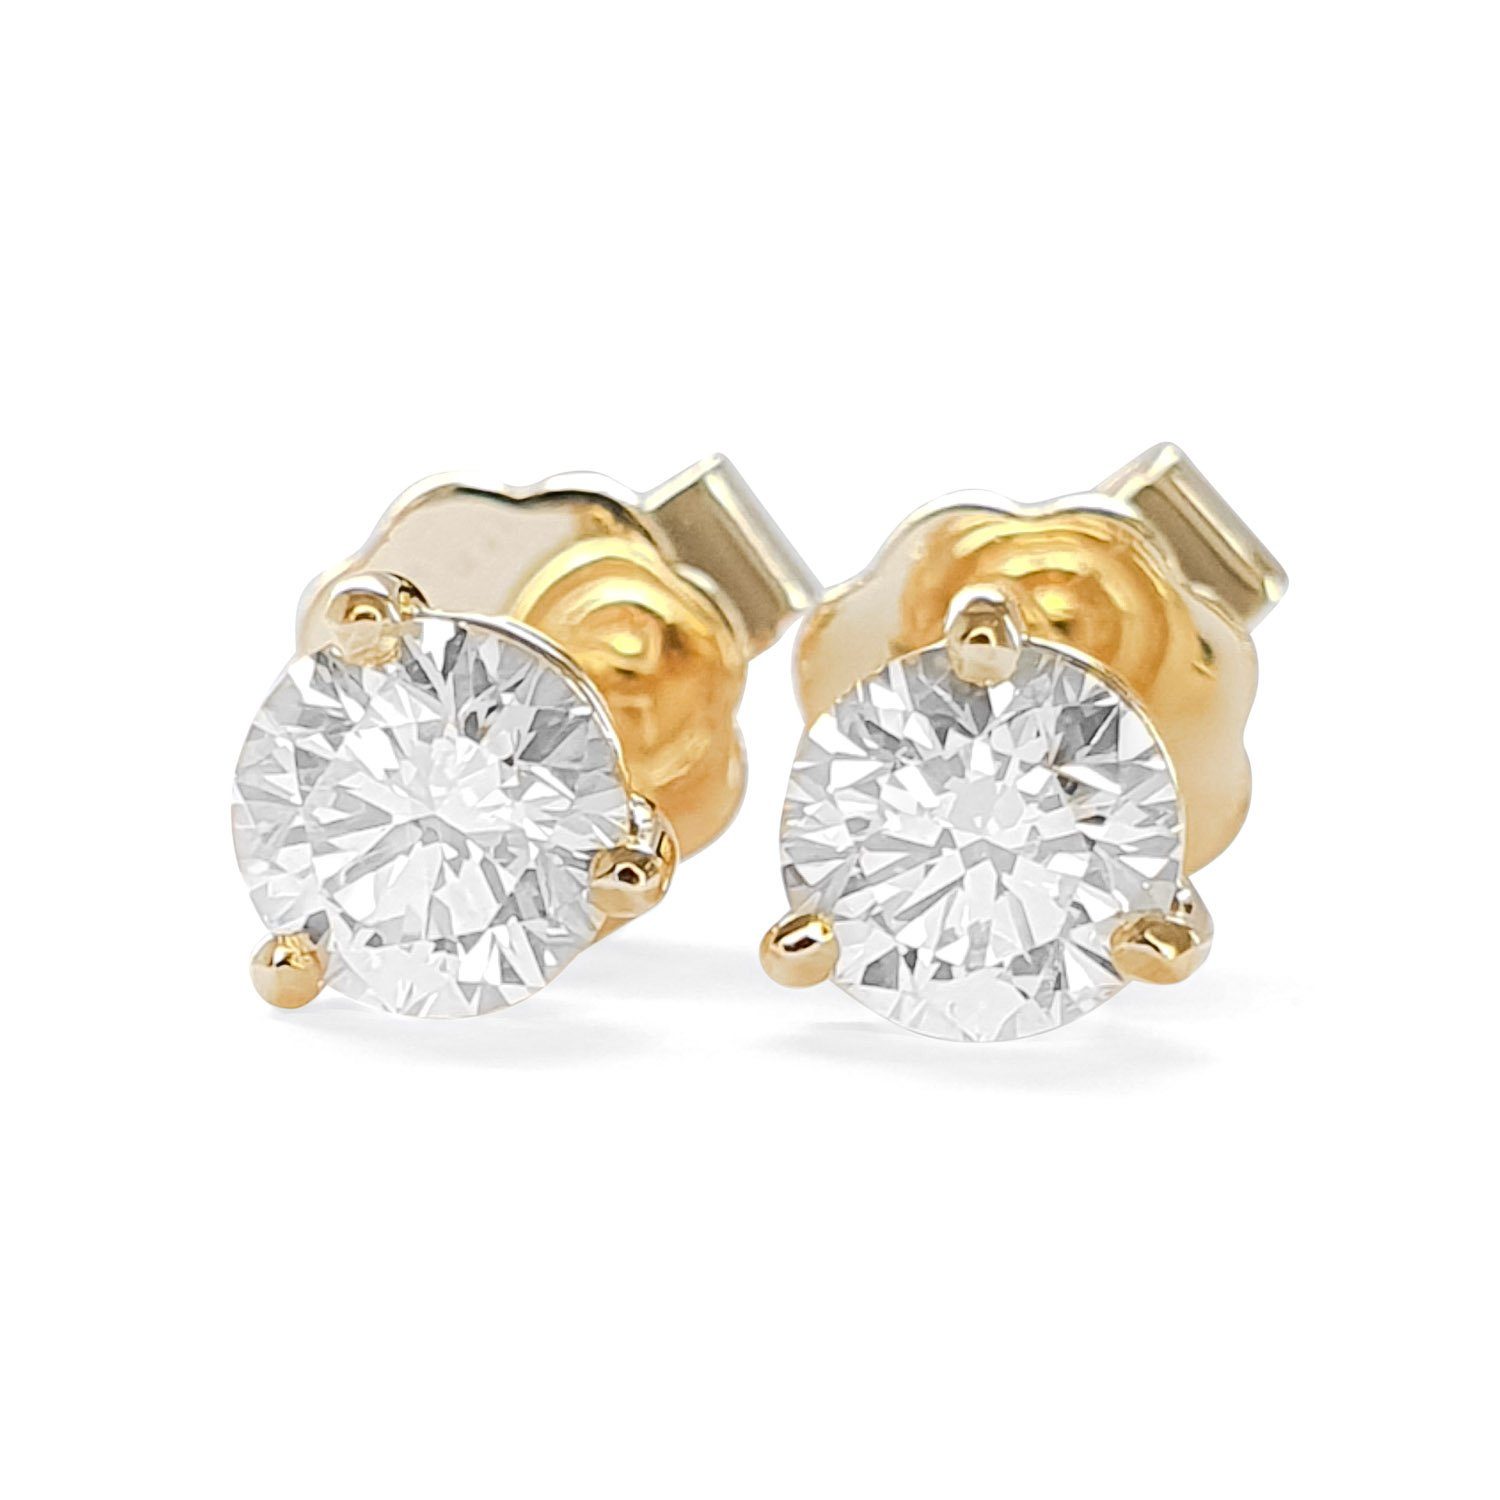 Webgoldschmied Paar Ohrstecker Ohrstecker Paar 750 Gold mit 2 Diamanten Brillanten 0,60 F/IF